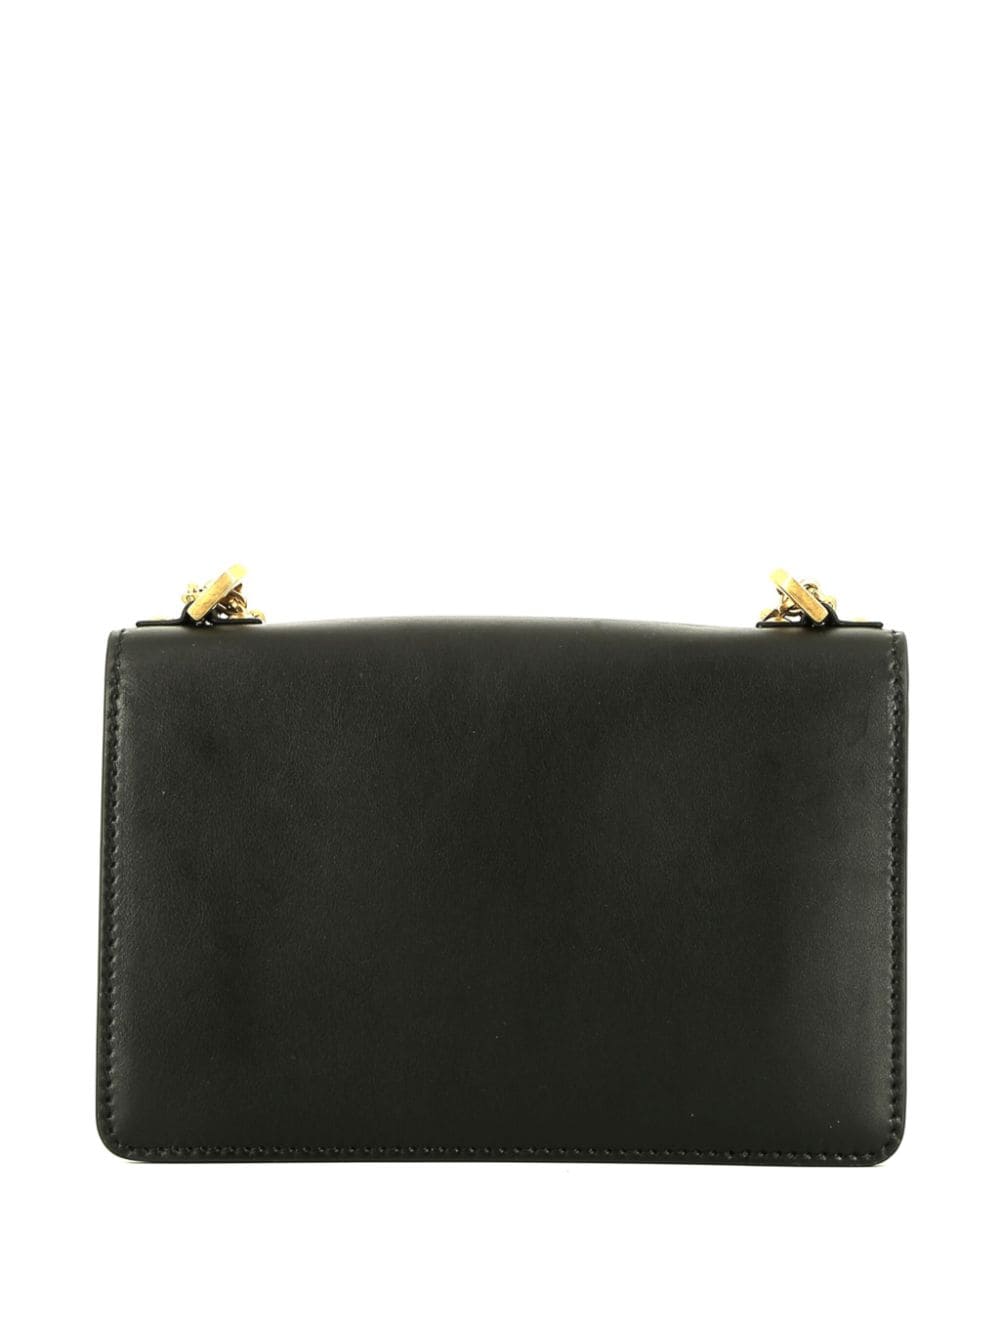 Image 2 of Christian Dior Pre-Owned J'Adior leather shoulder bag